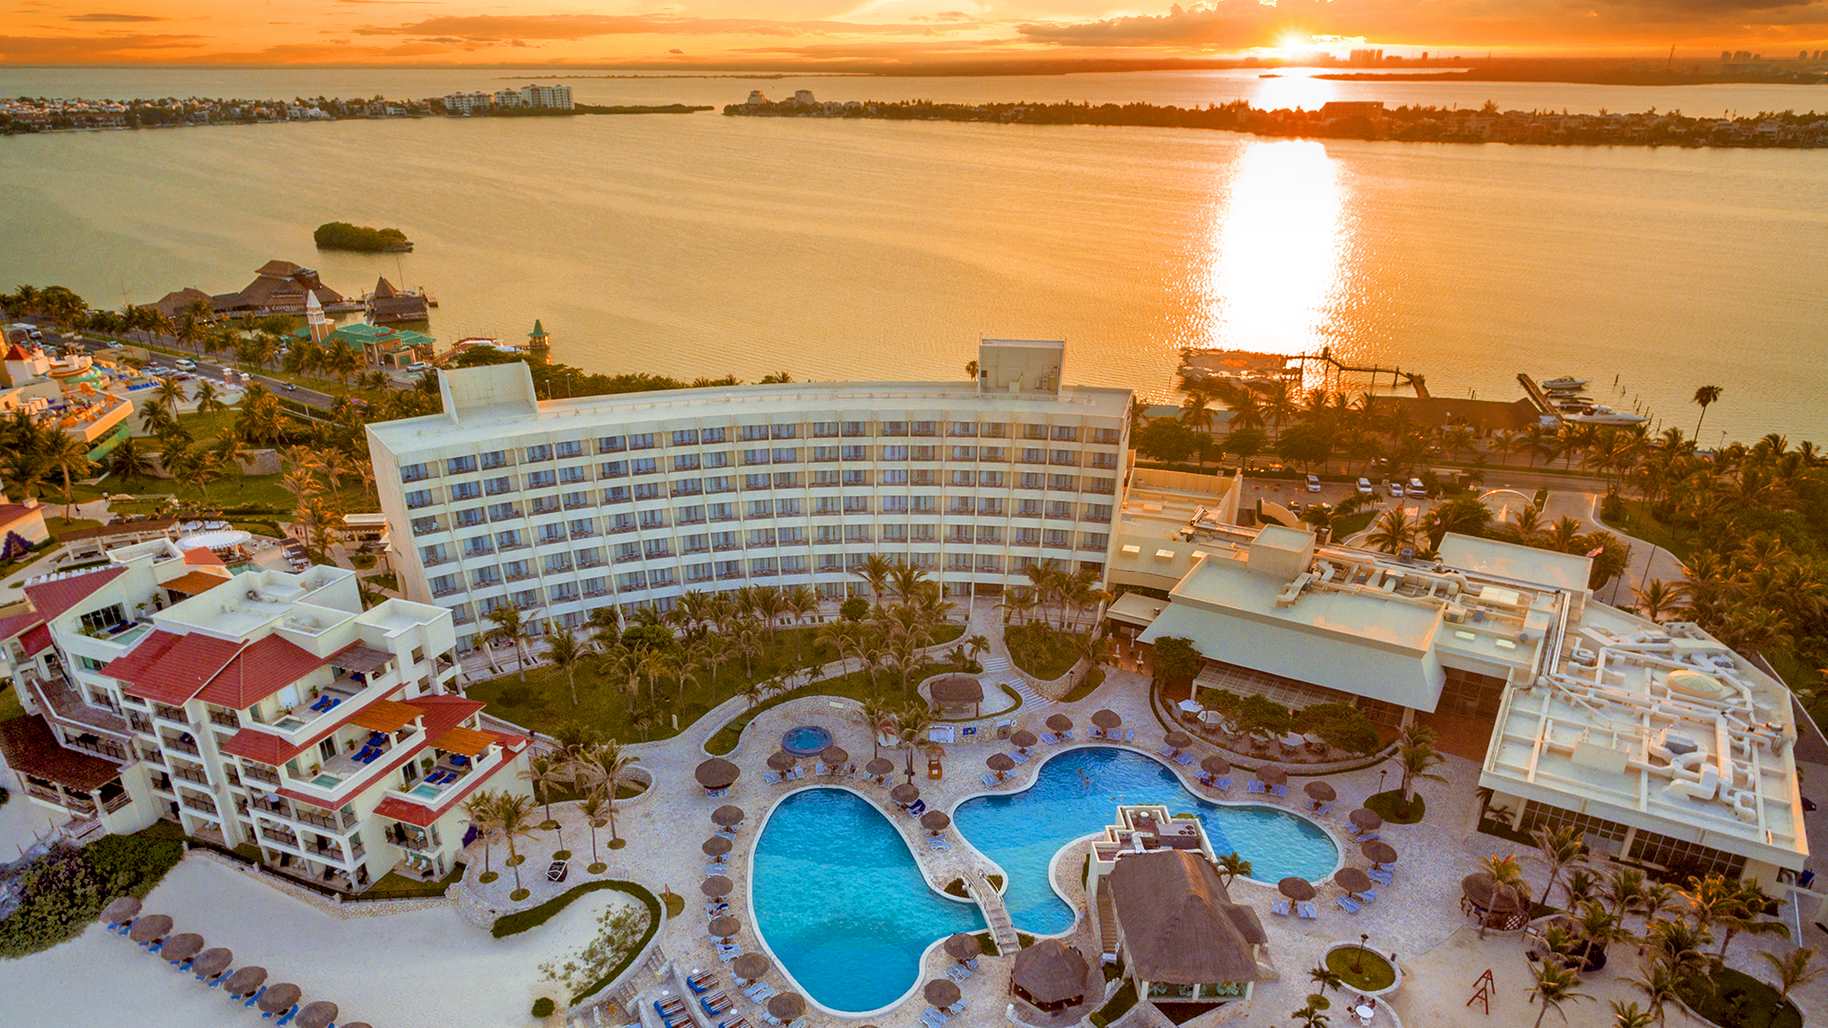 royal-holiday-hotel-resort-vistas-aereas-grand-park-royal-cancun-caribe-mexico-quintana-roo-cancun